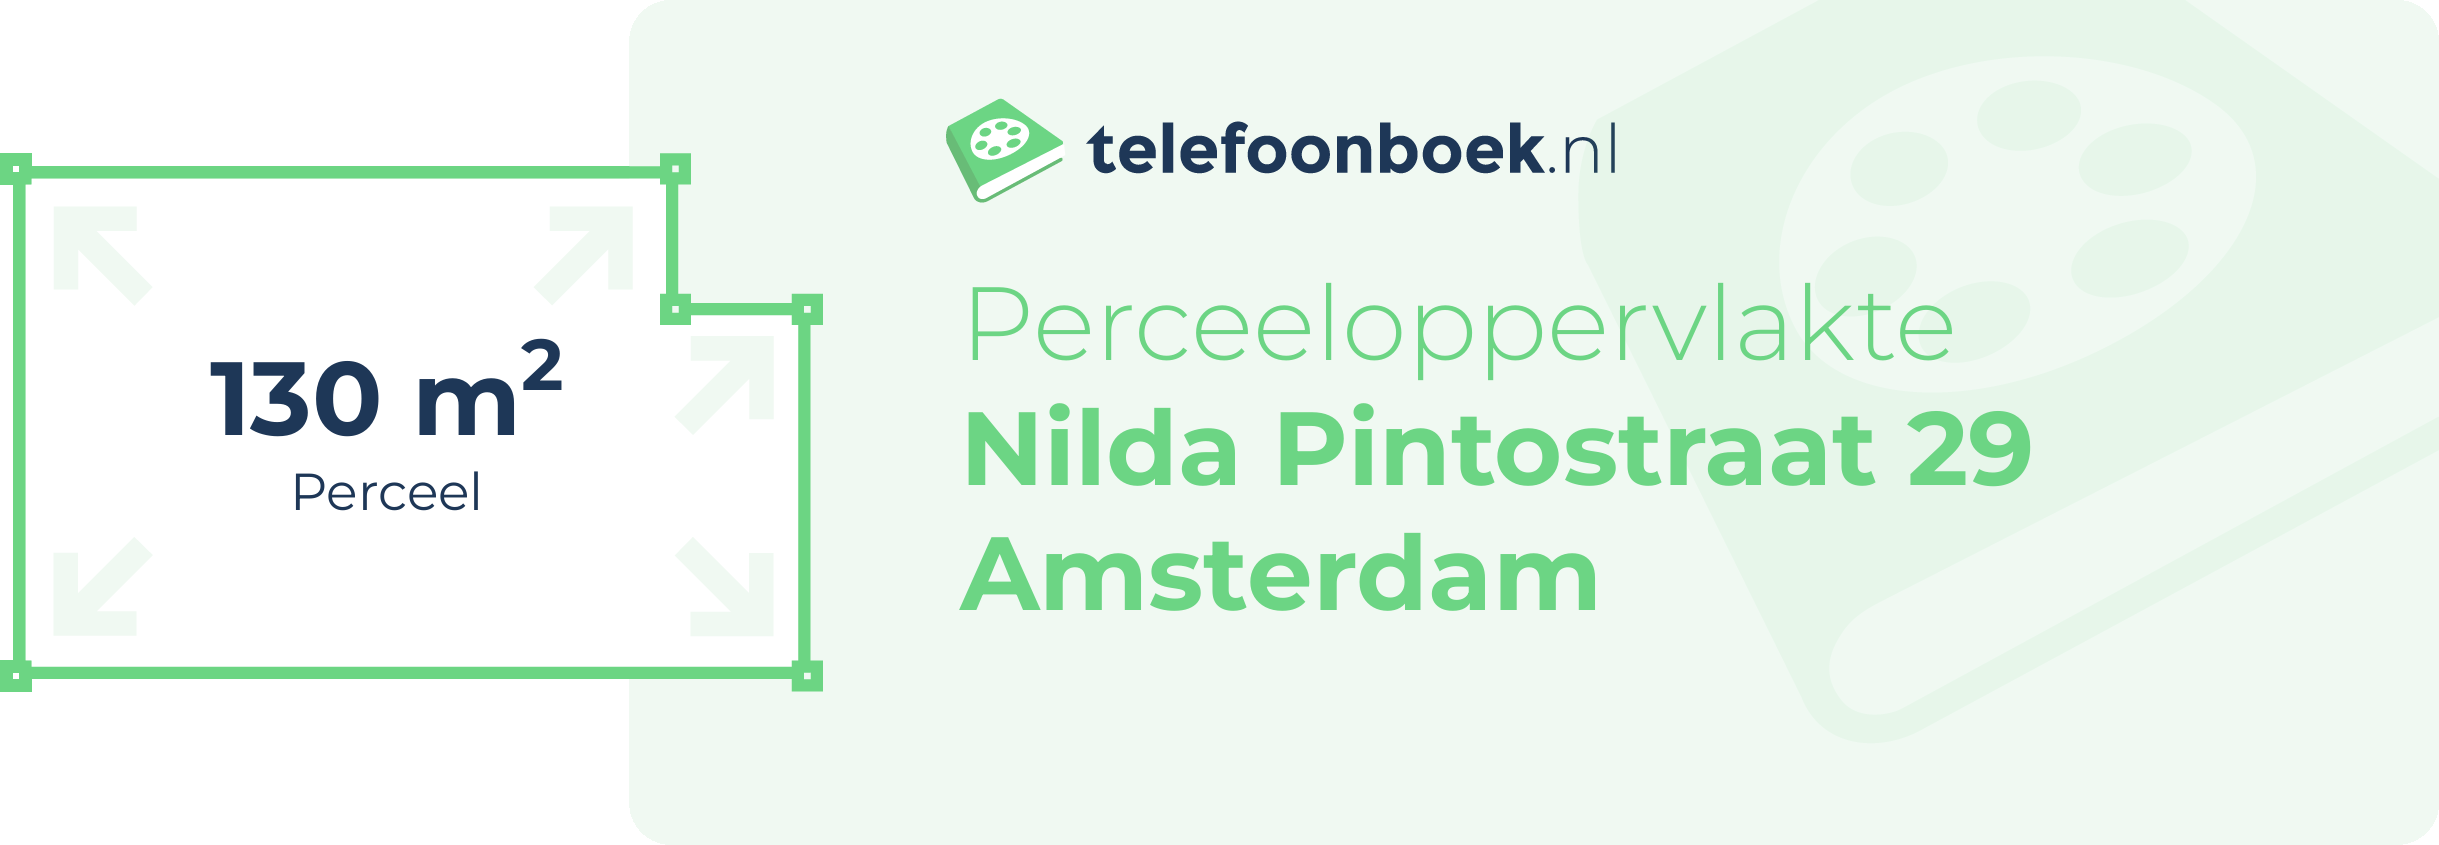 Perceeloppervlakte Nilda Pintostraat 29 Amsterdam